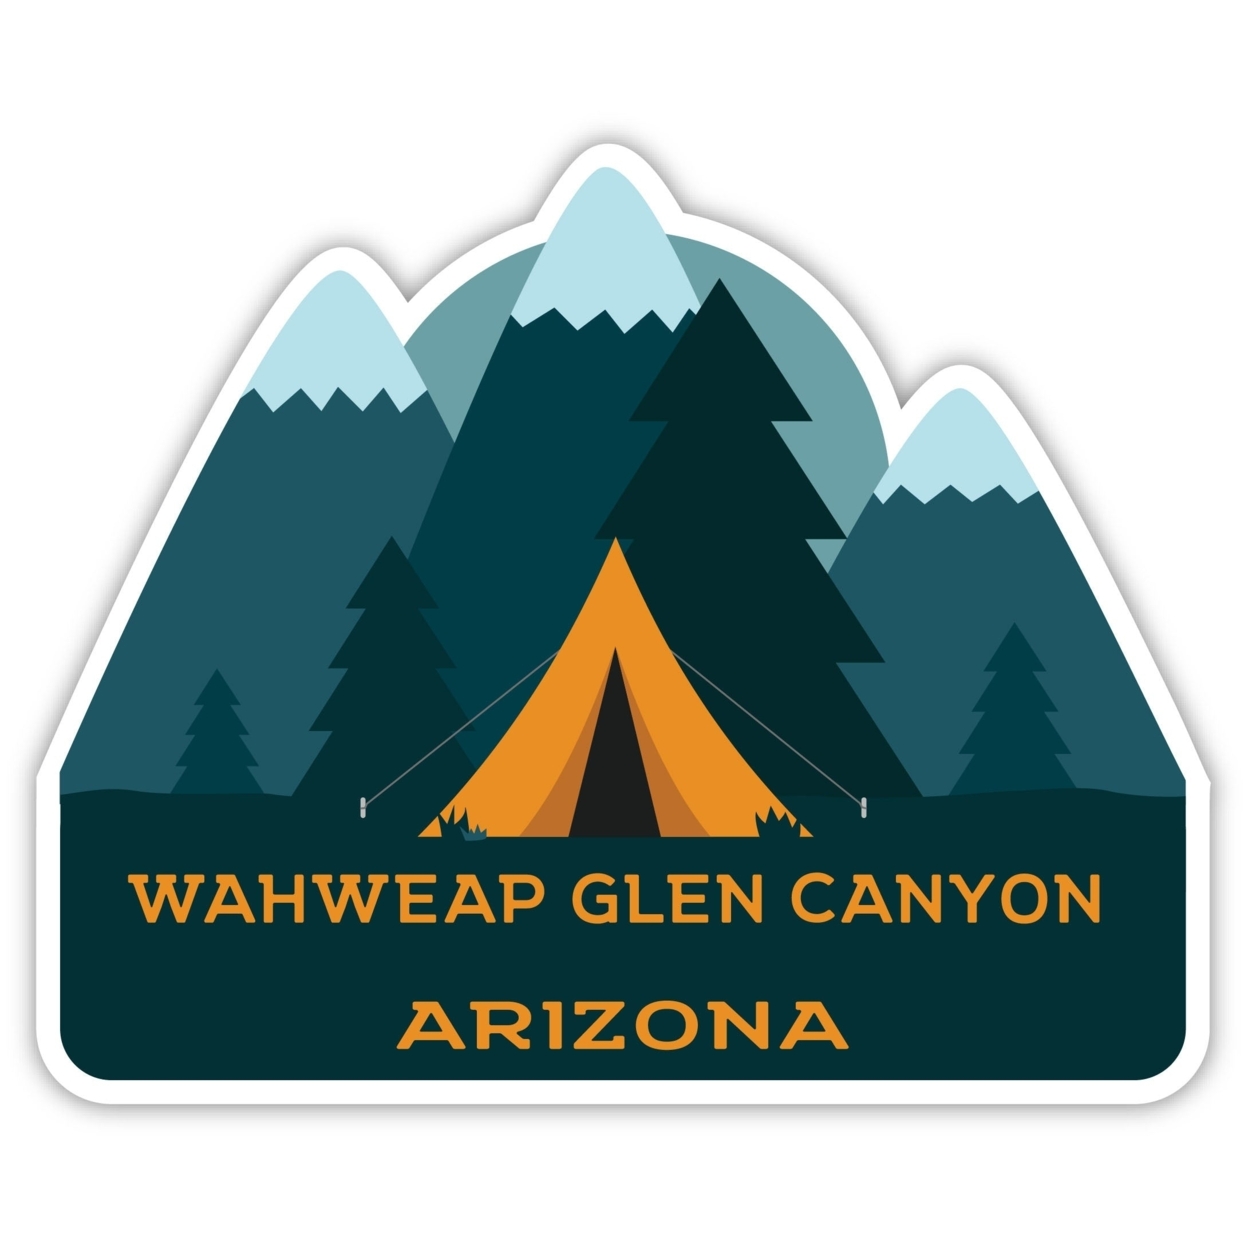 Wahweap Glen Canyon Arizona Souvenir Decorative Stickers (Choose Theme And Size) - Single Unit, 2-Inch, Tent